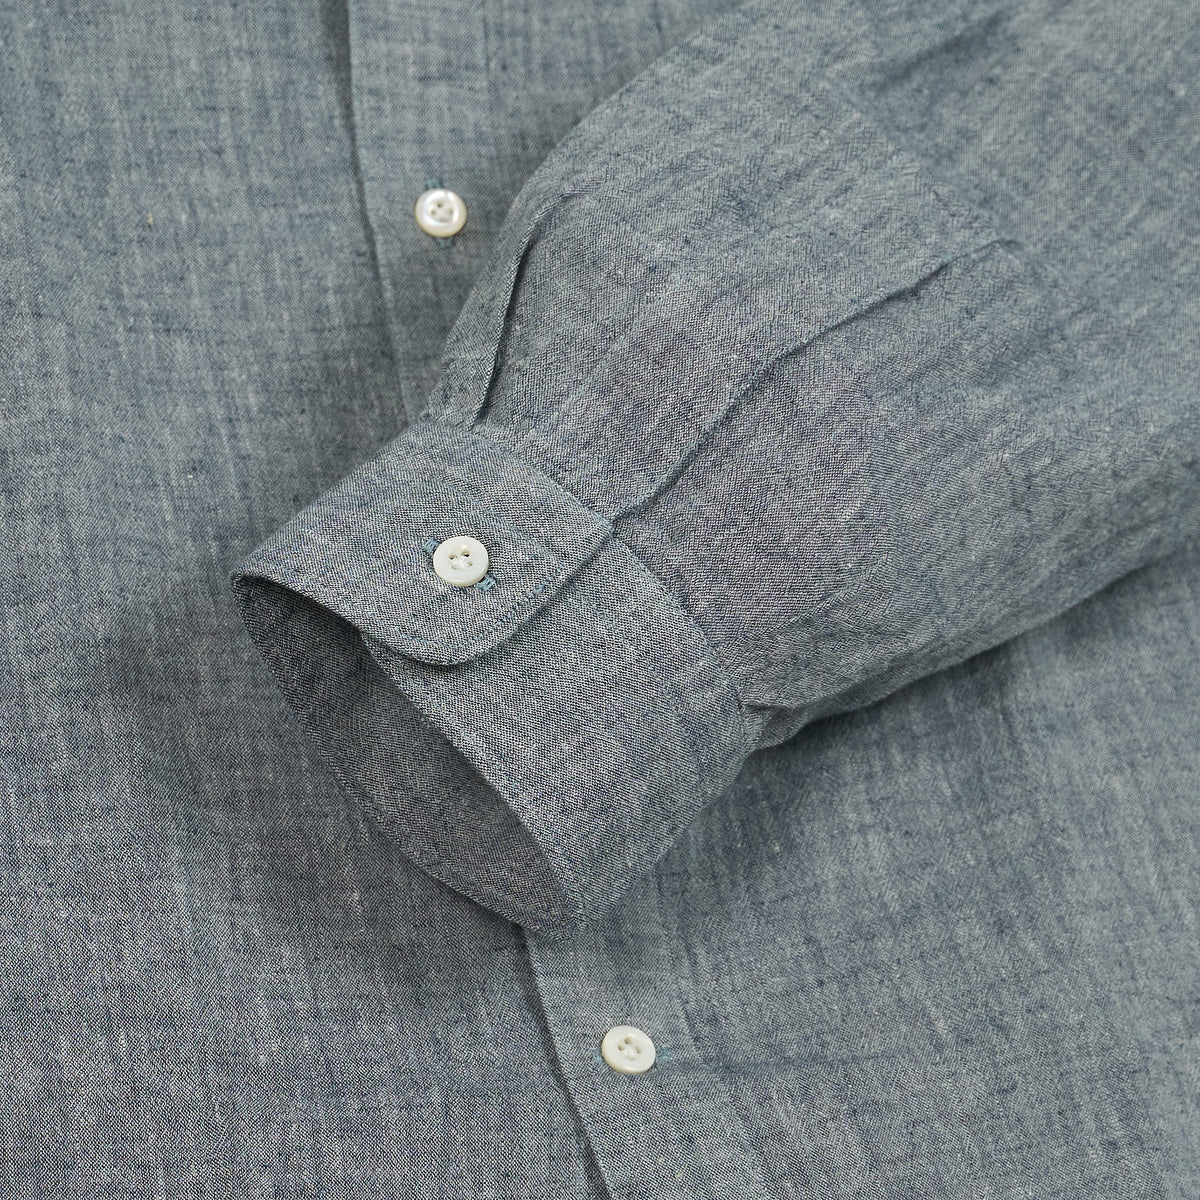 A.B.C.L Long Sleeve Linen Cotton Pocket Shirt